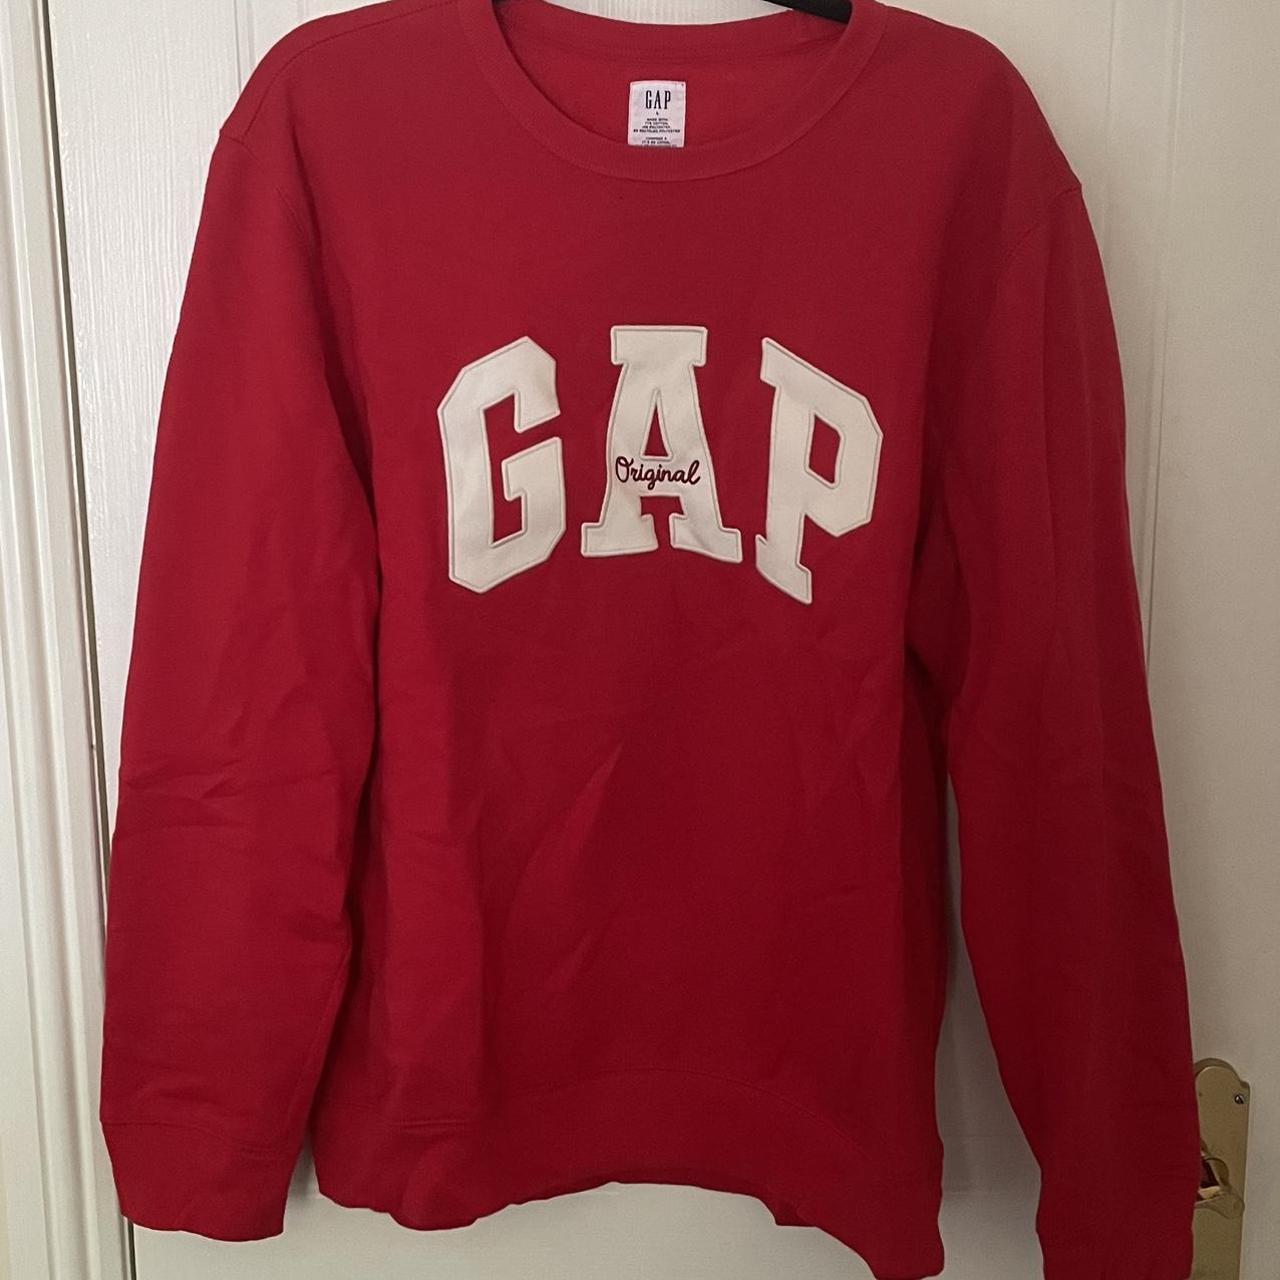 Gap Men's Red Sweatshirt | Depop